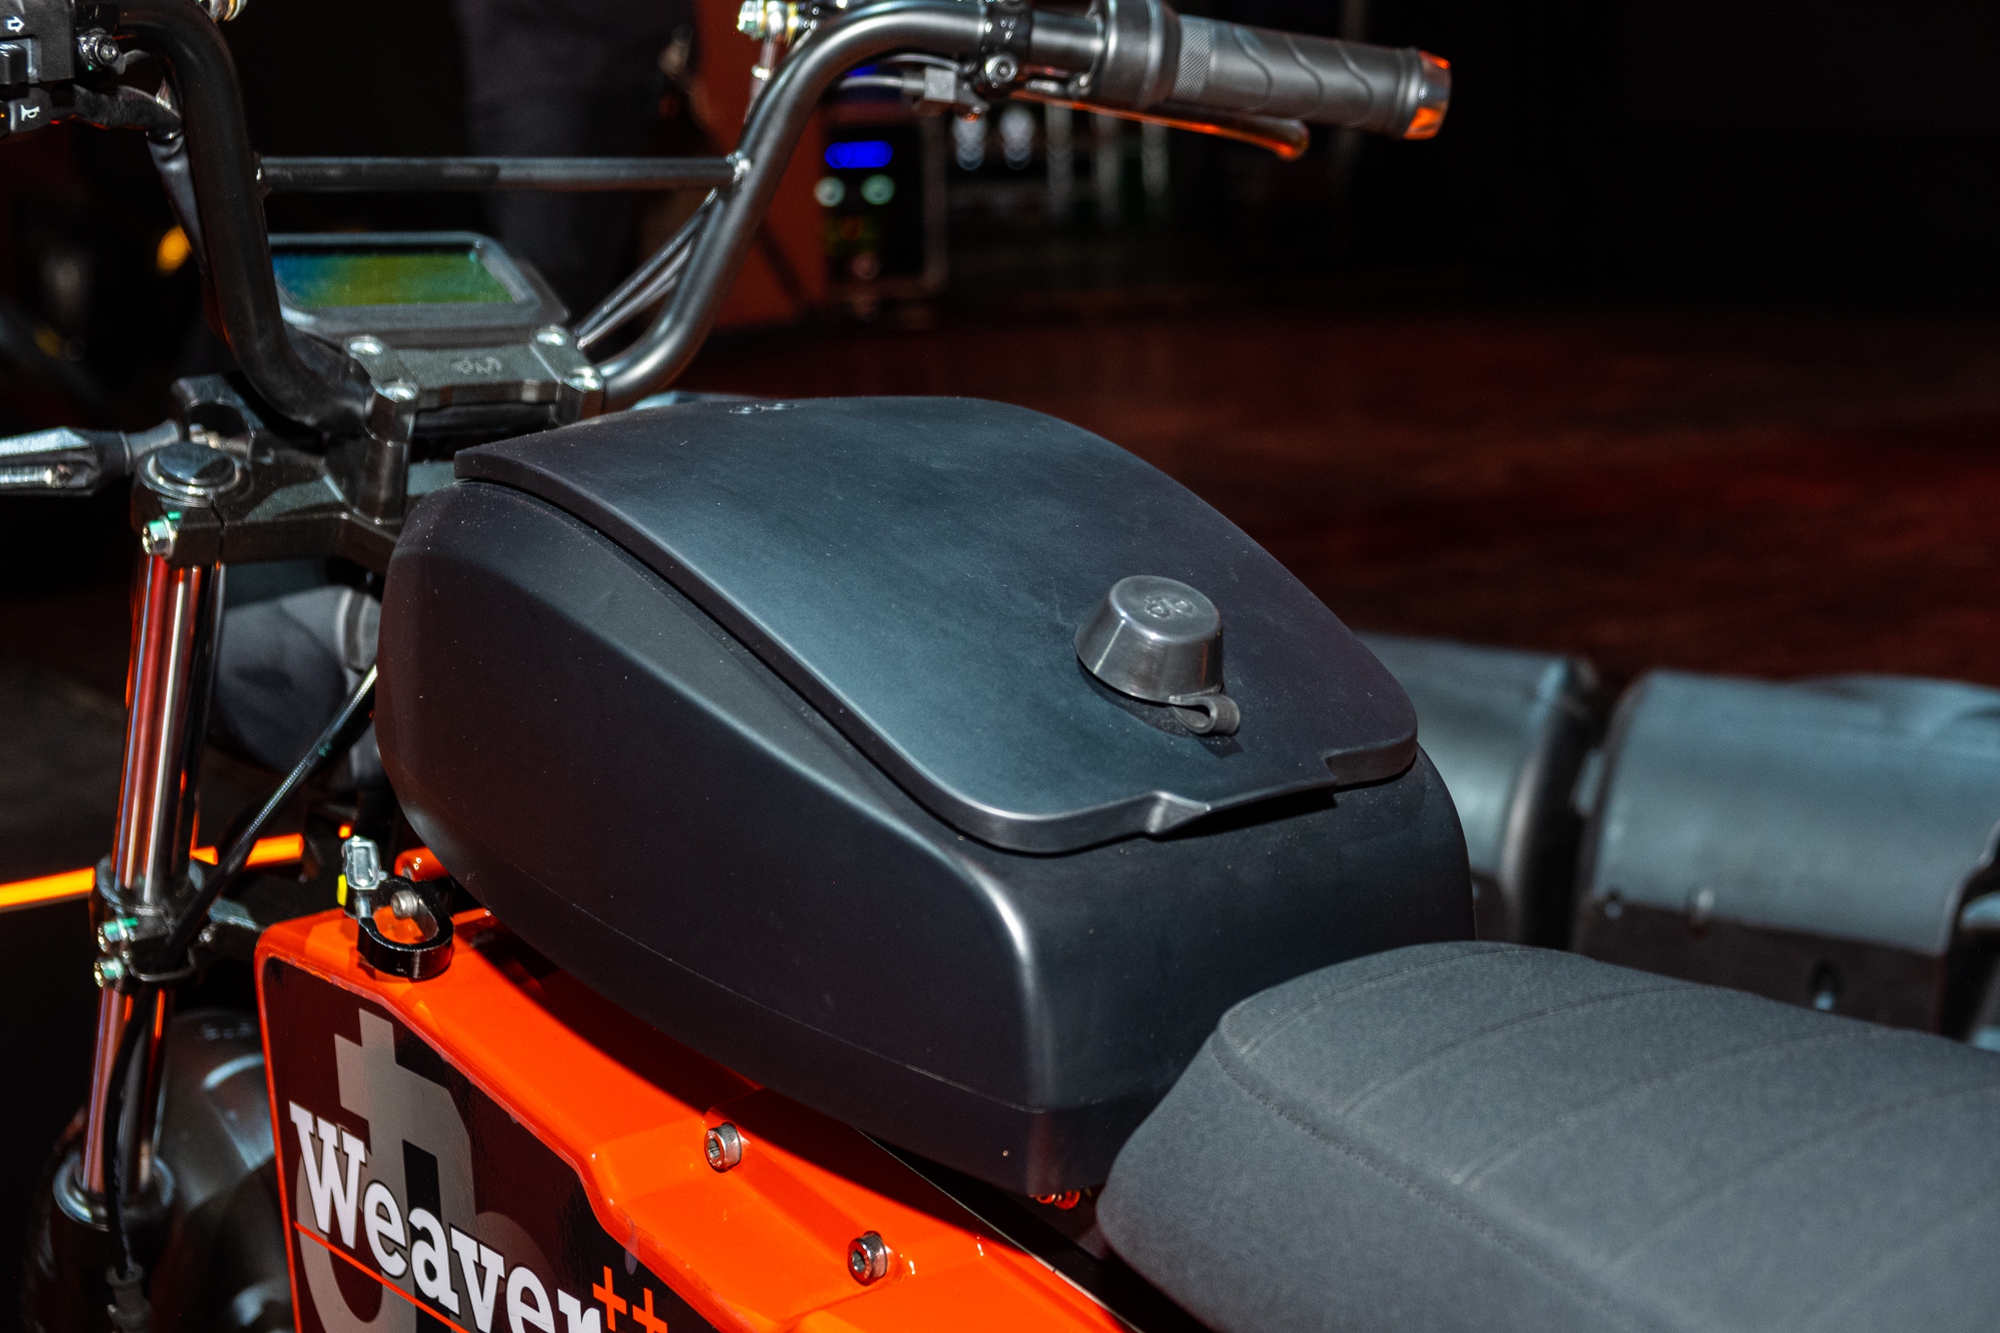 Ra mắt Dat Bike Weaver++: Giá 65,9 triệu đồng, dáng cổ điển, sạc nhanh chưa từng có tại Việt Nam - ảnh 19